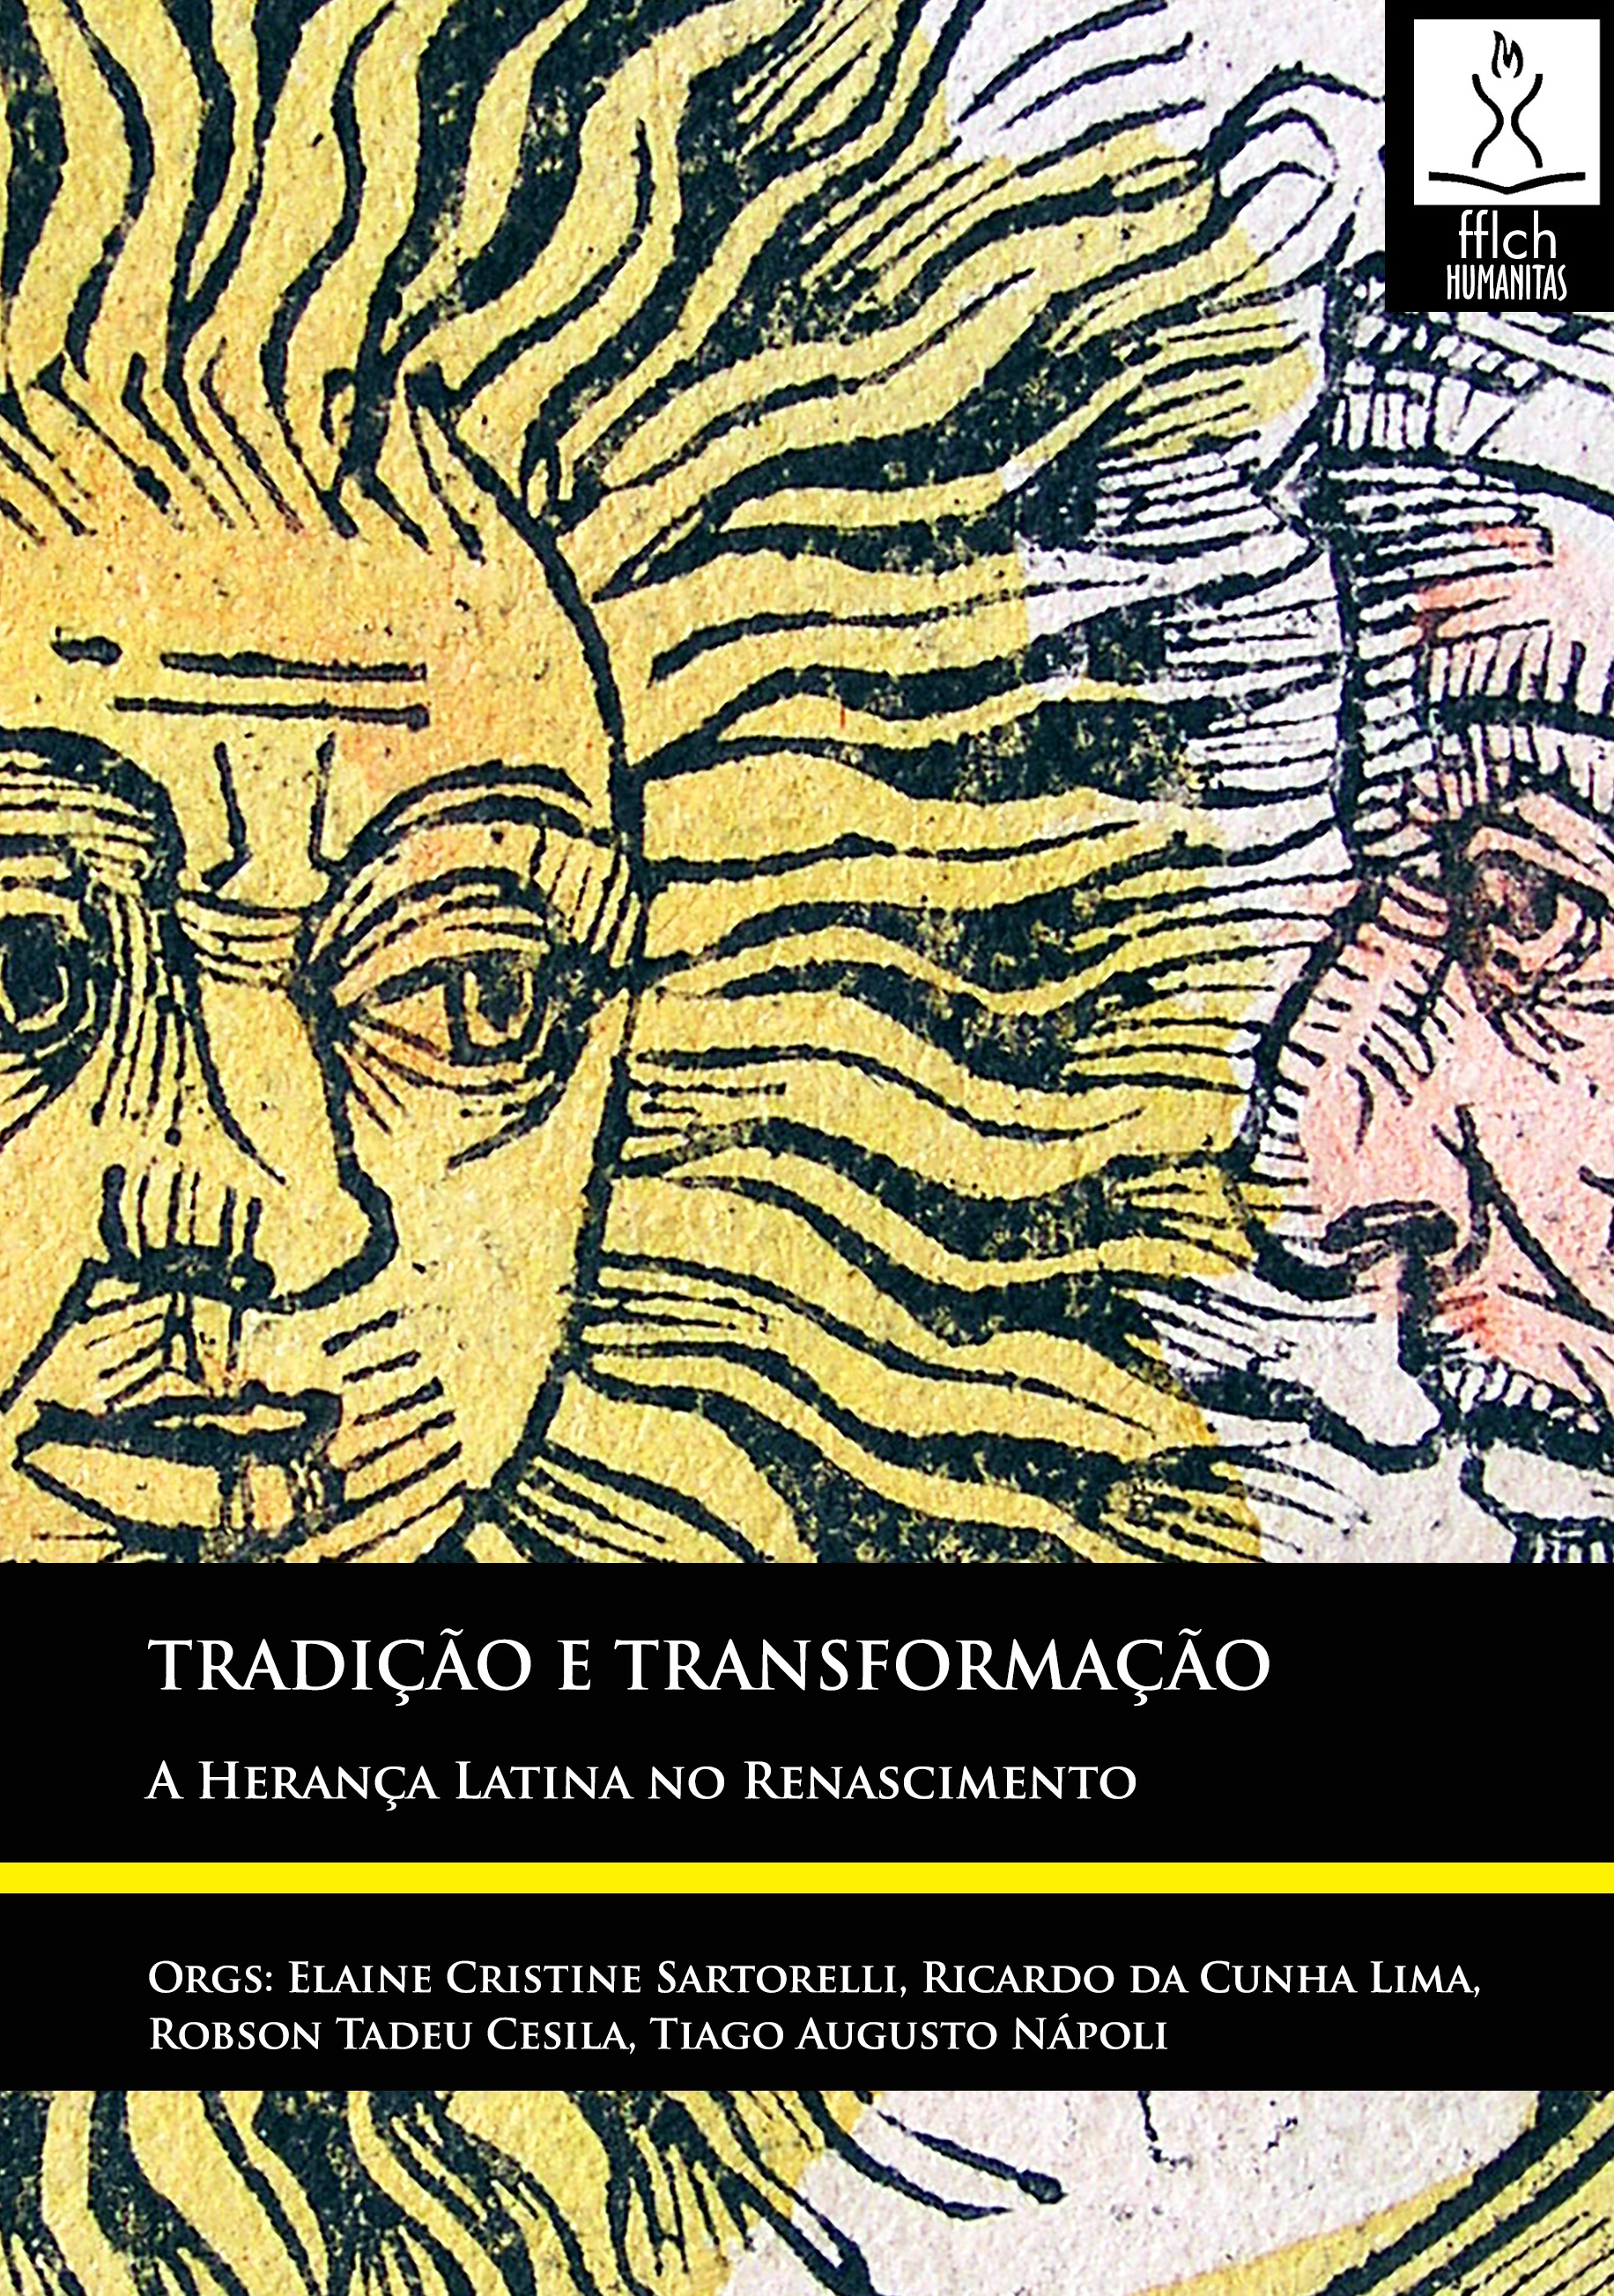 Capa do livro Tradição e Transformação